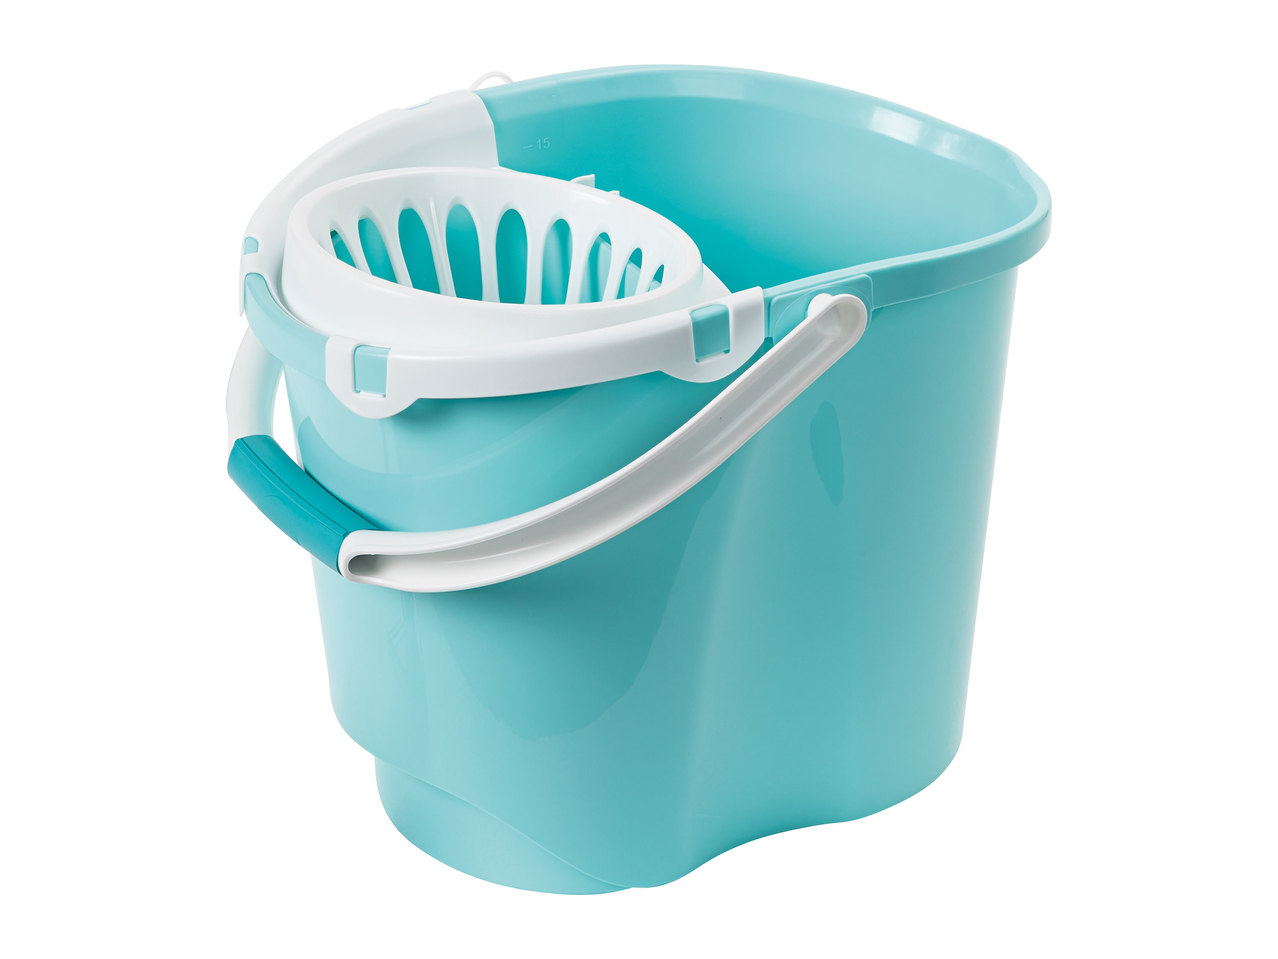 Aquapur Mop and Bucket Set1